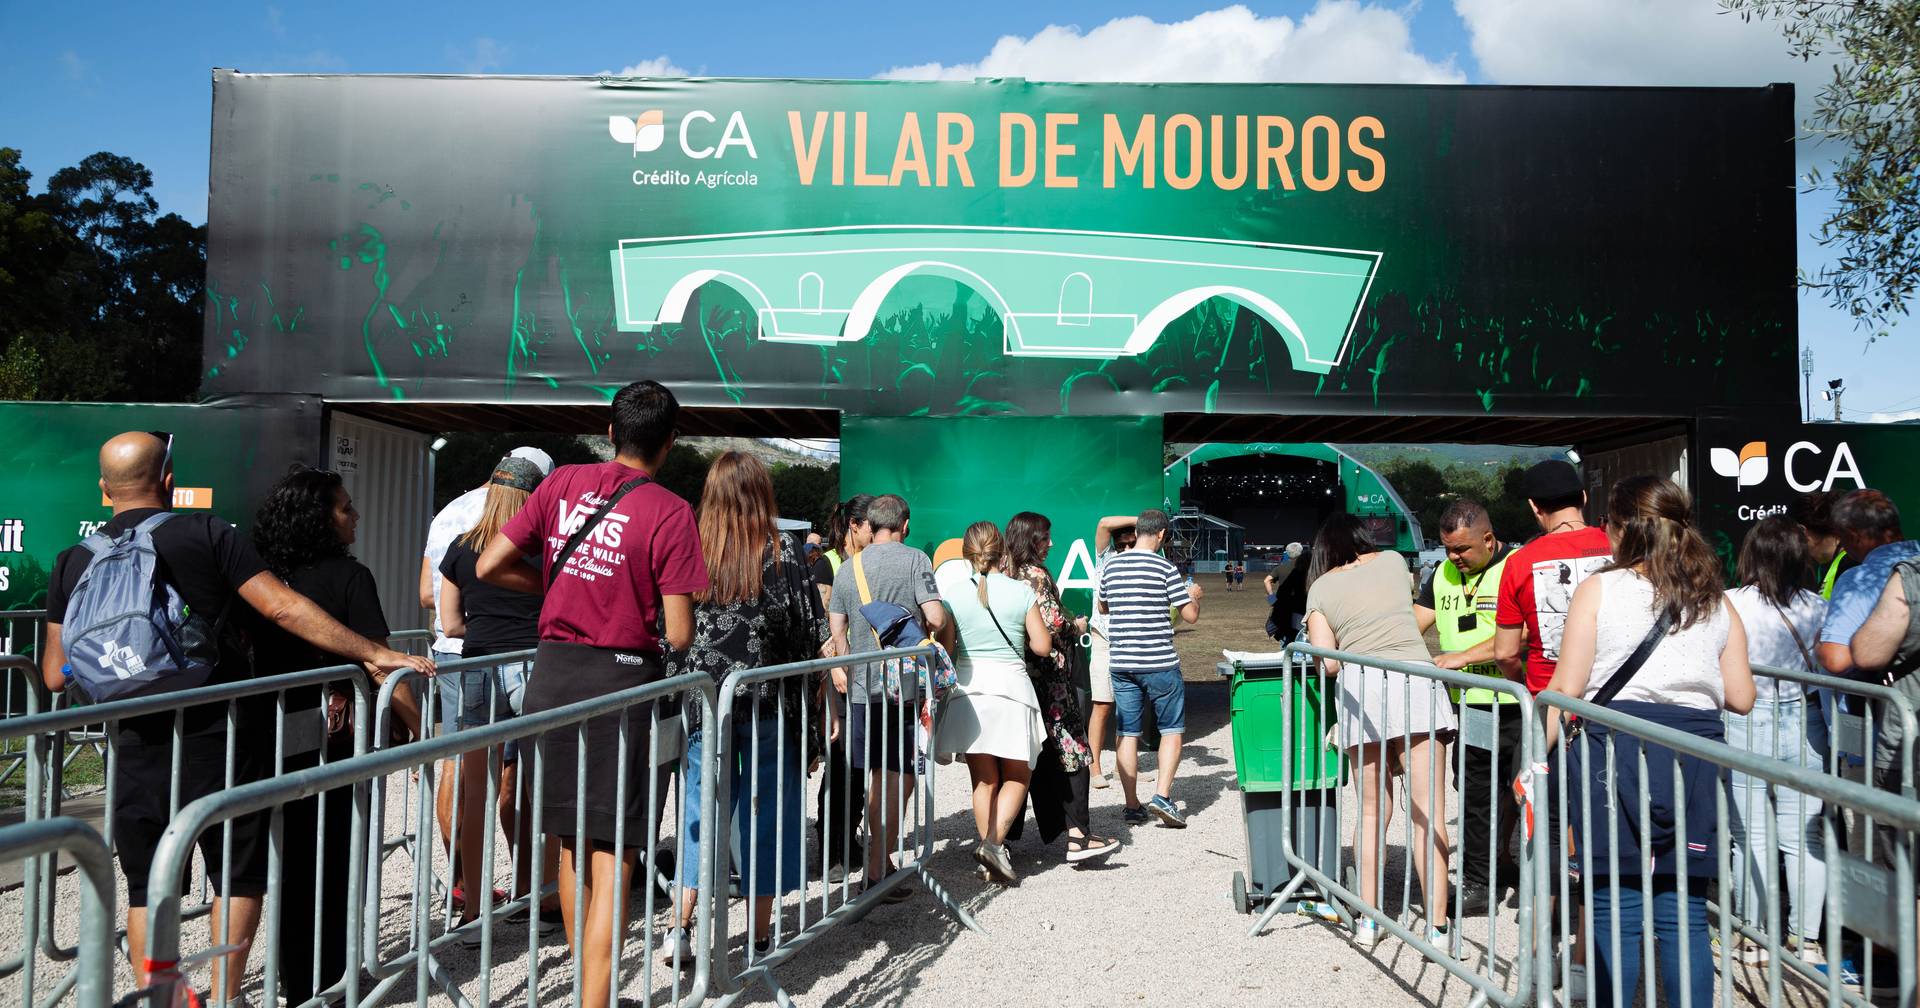 CA Vilar de Mouros: près de 70 mille personnes ont été accueillies par le festival, selon les organisateurs.